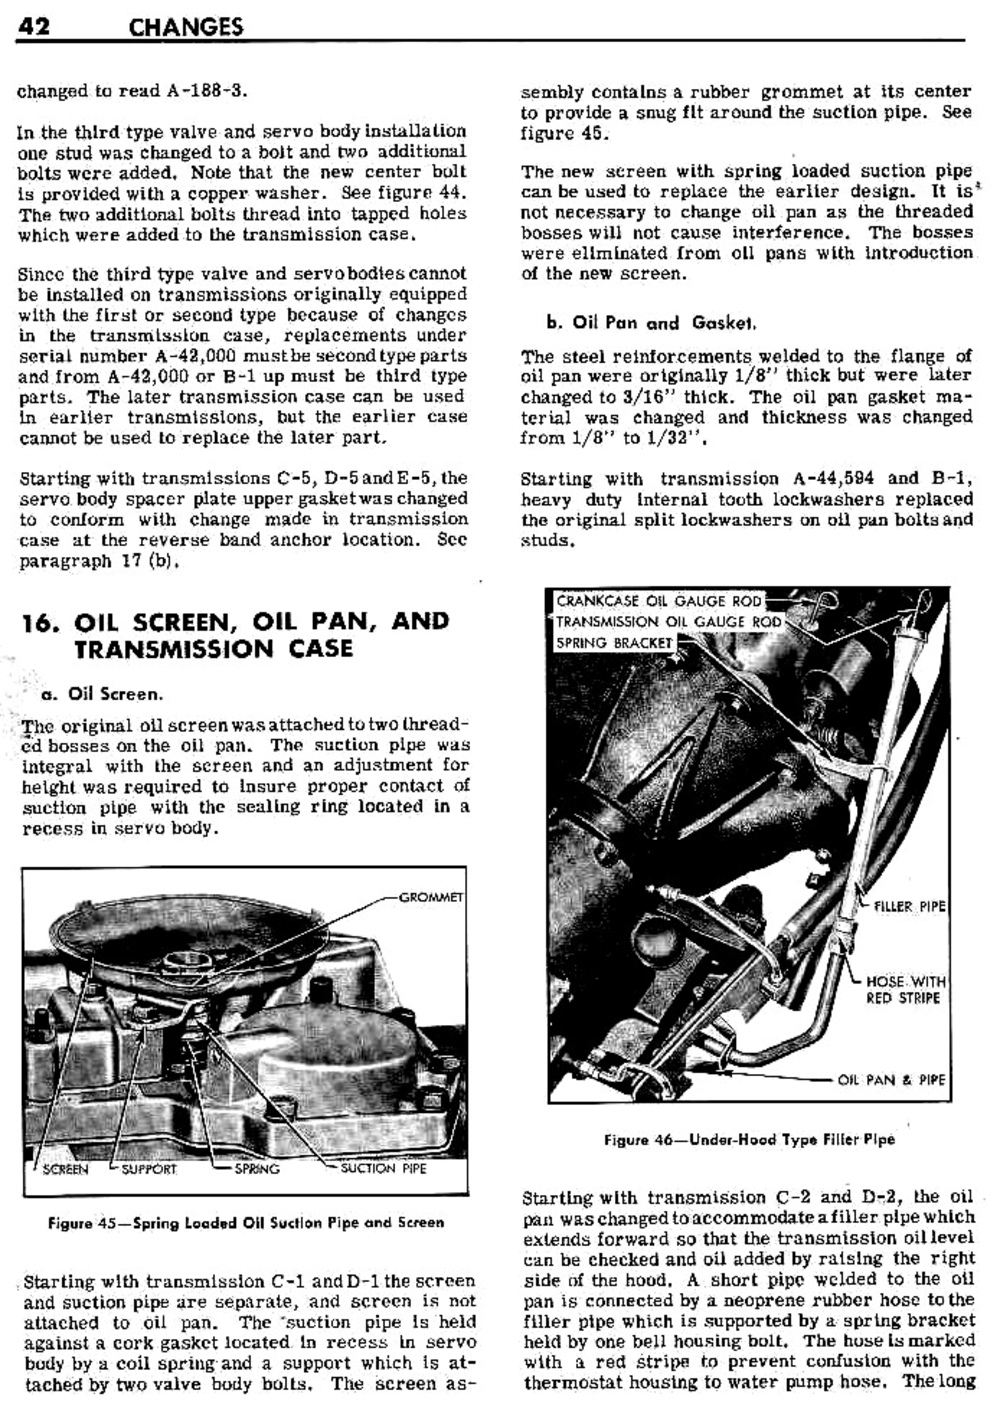 n_04 1948 Buick Transmission - Design Changes-004-004.jpg